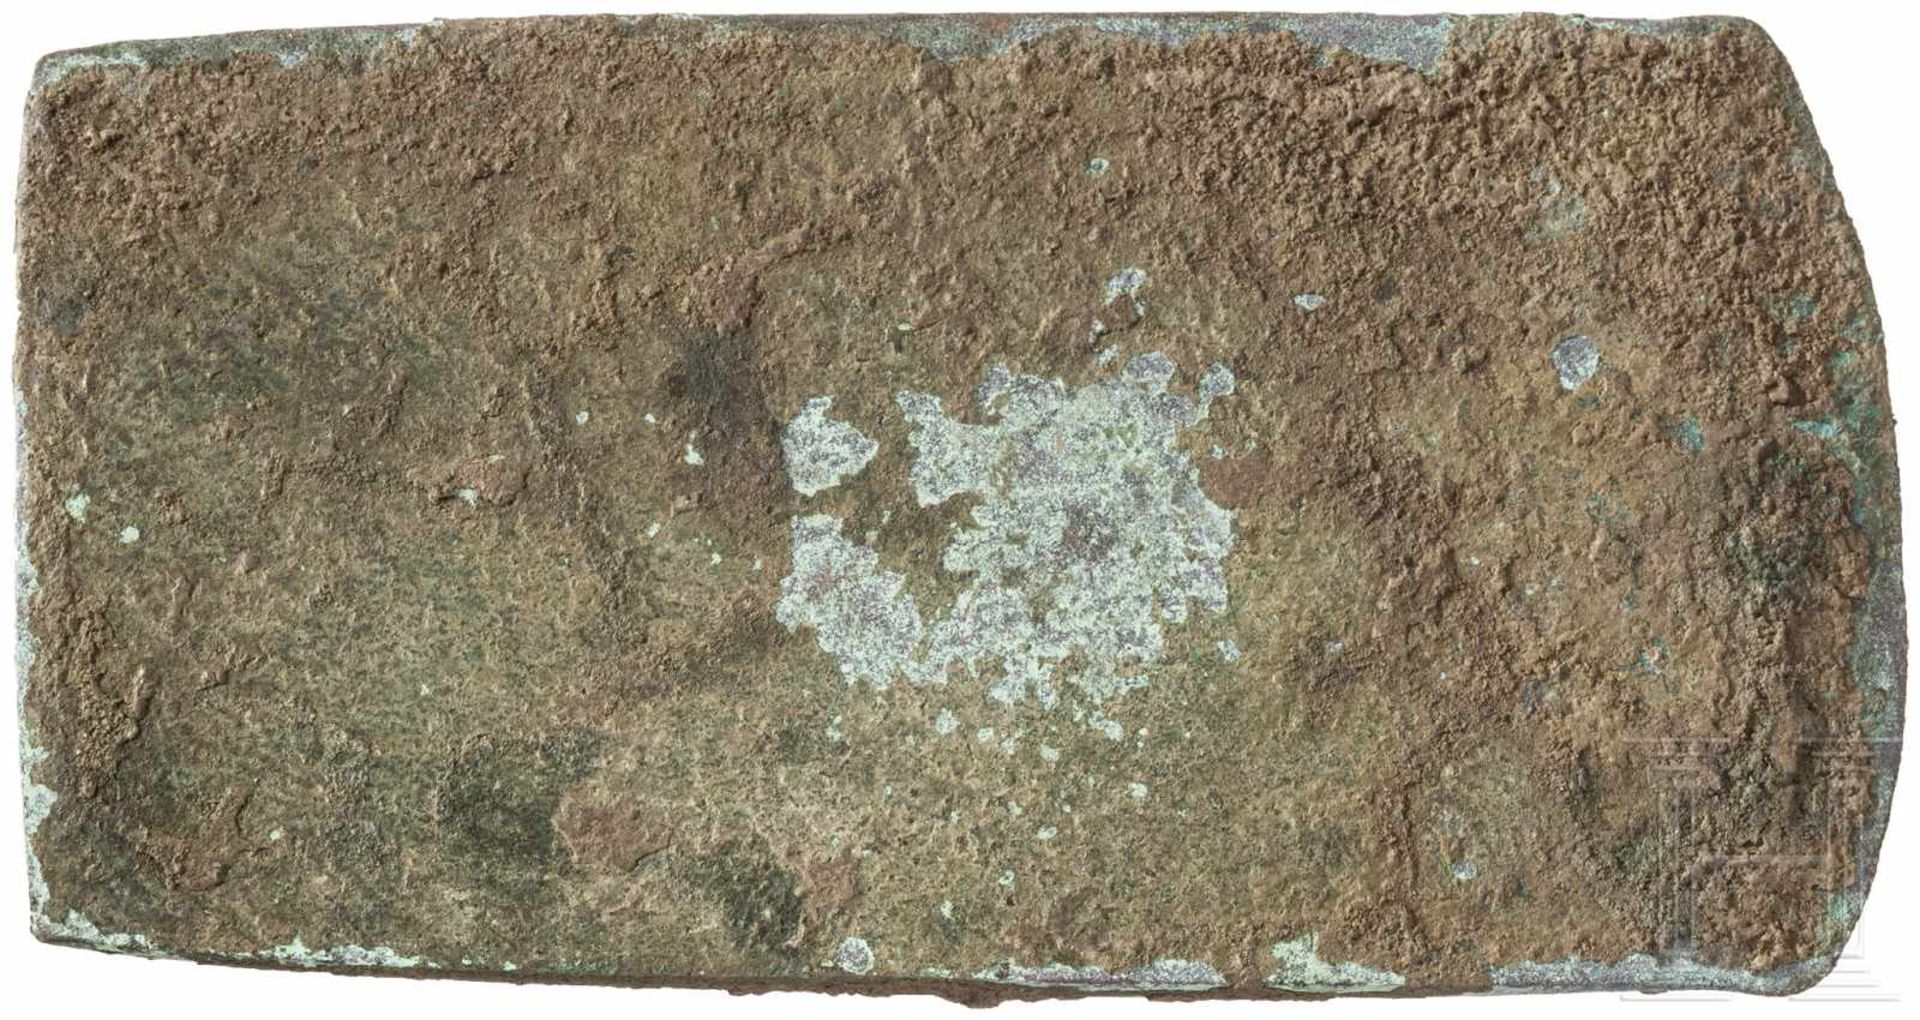 Rechteckflachbeil Typ Vinča, Endneolithikum-Frühkupferzeit, ca. 4000 v. Chr.Großes Kupferflachbeil - Bild 2 aus 2